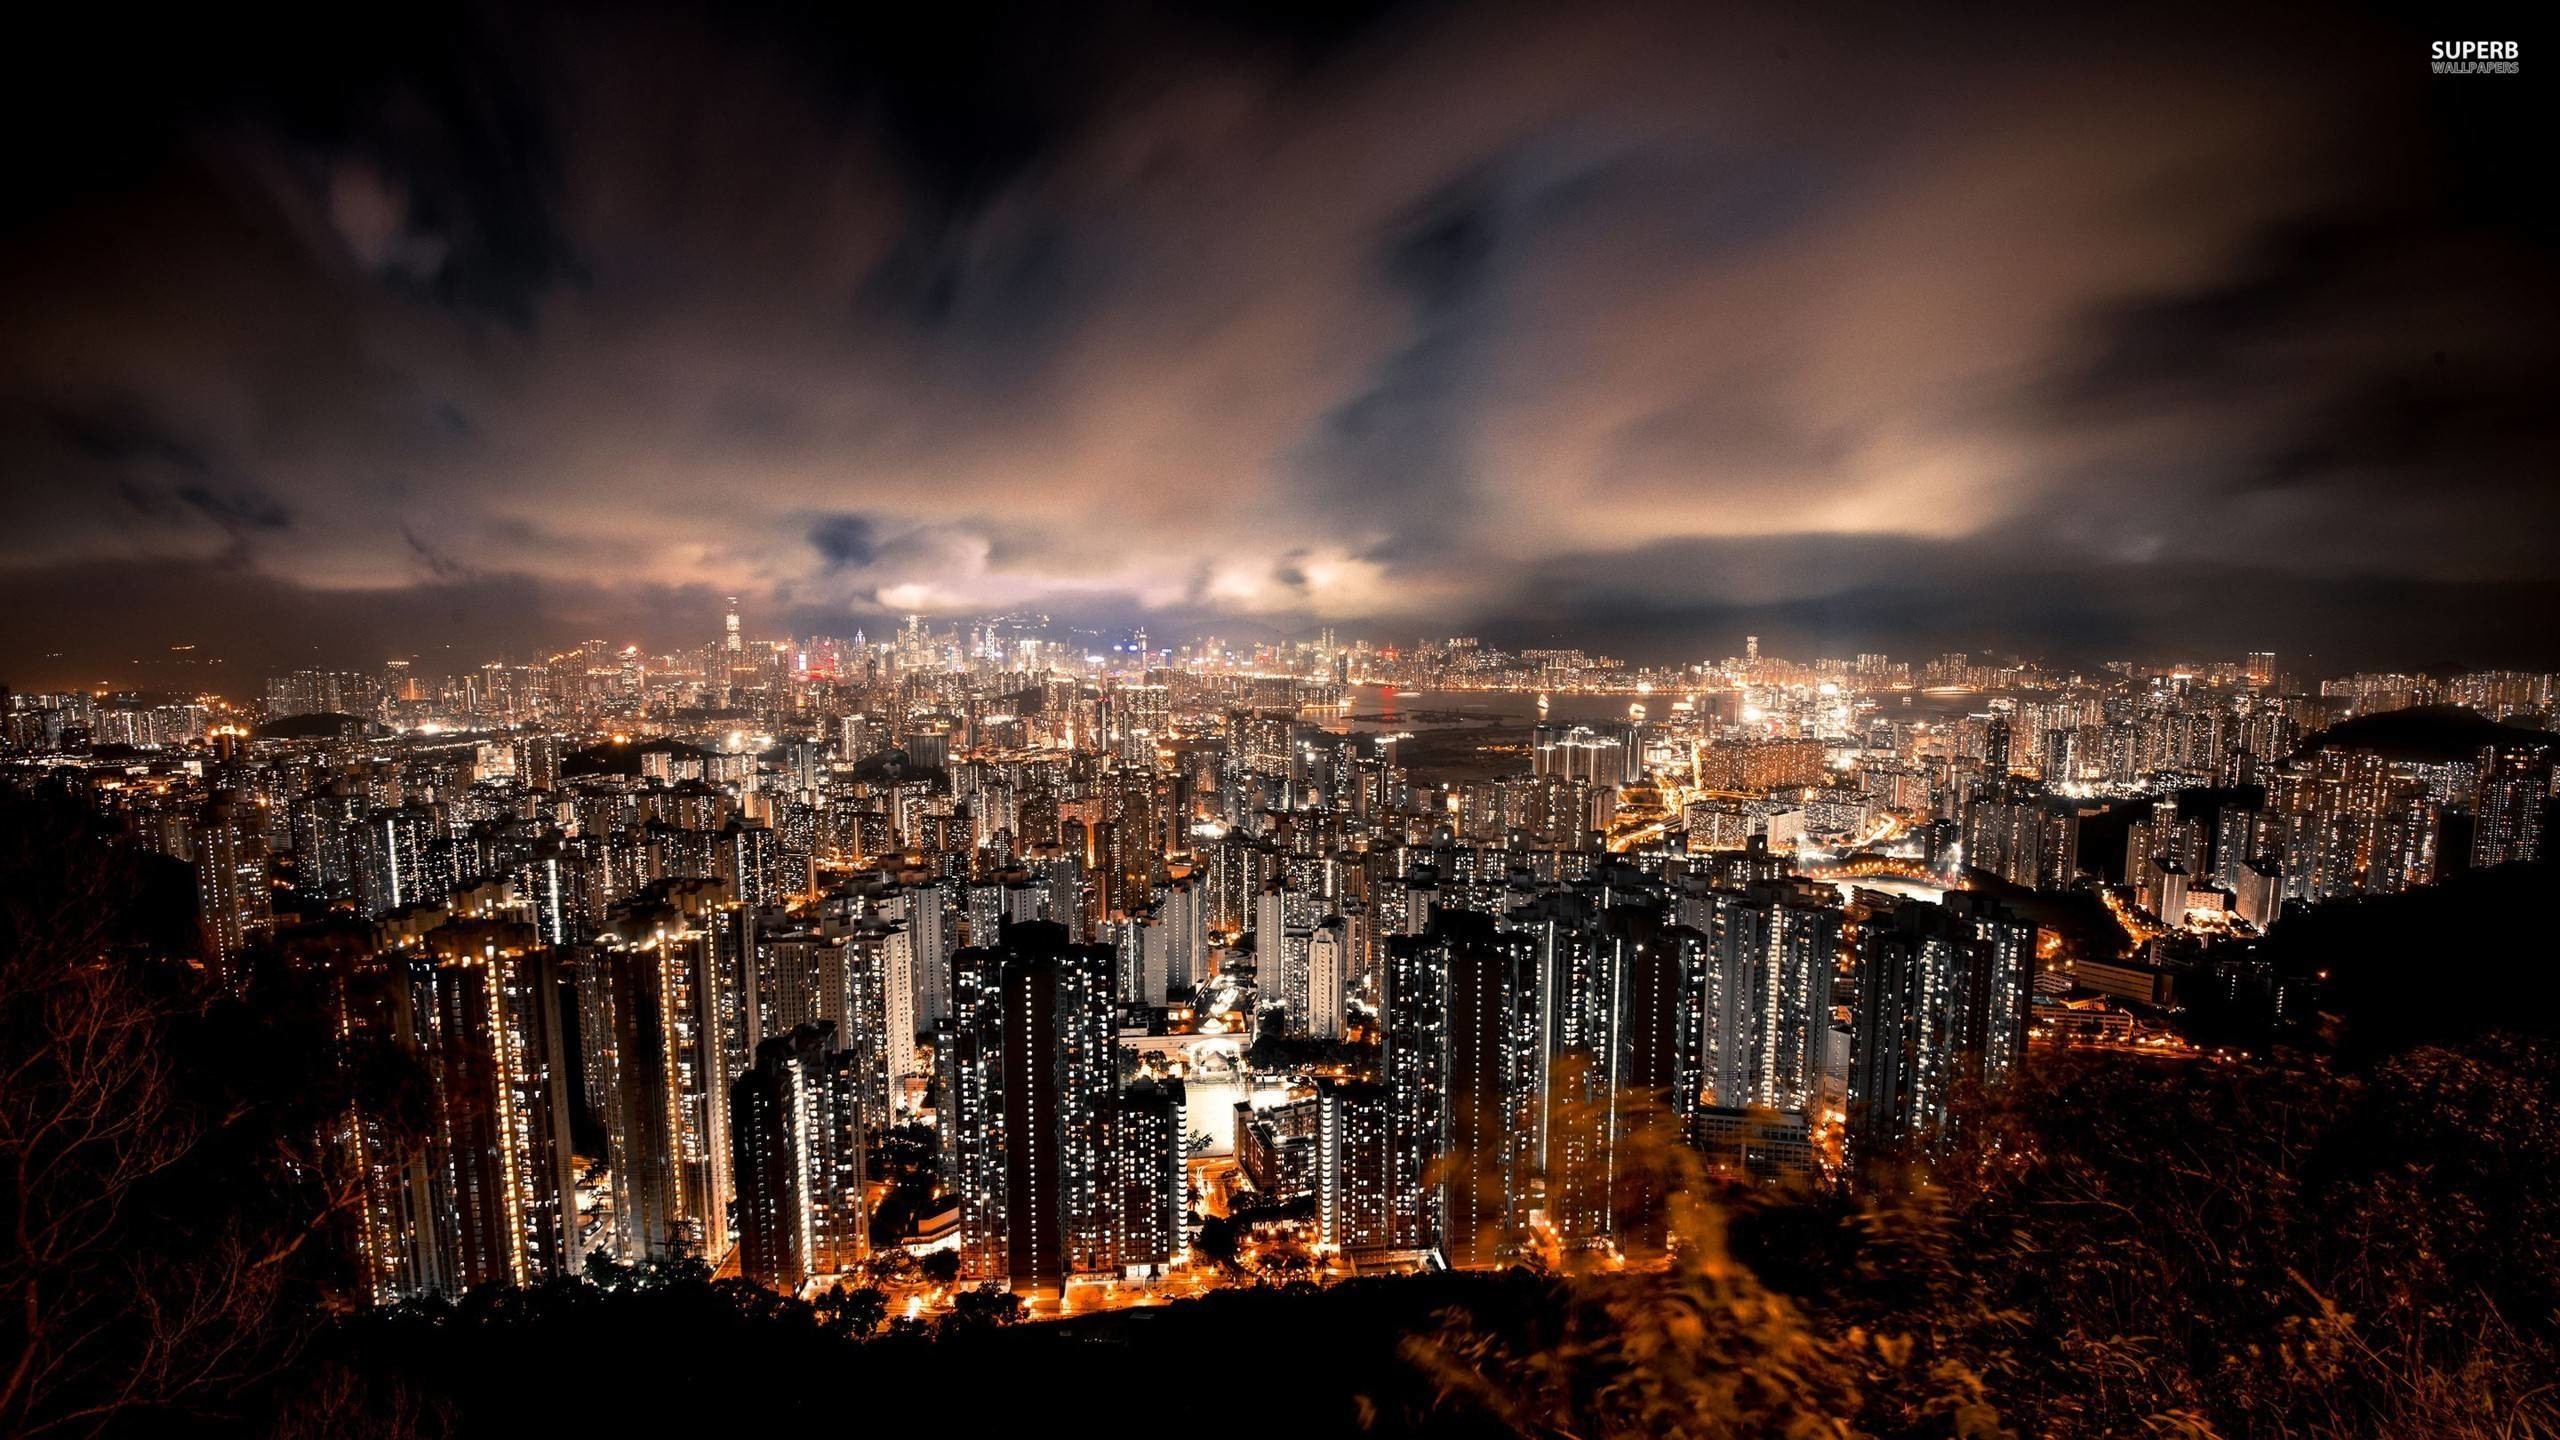 2560x1440 Hong Kong at night wallpaper - World wallpapers - #